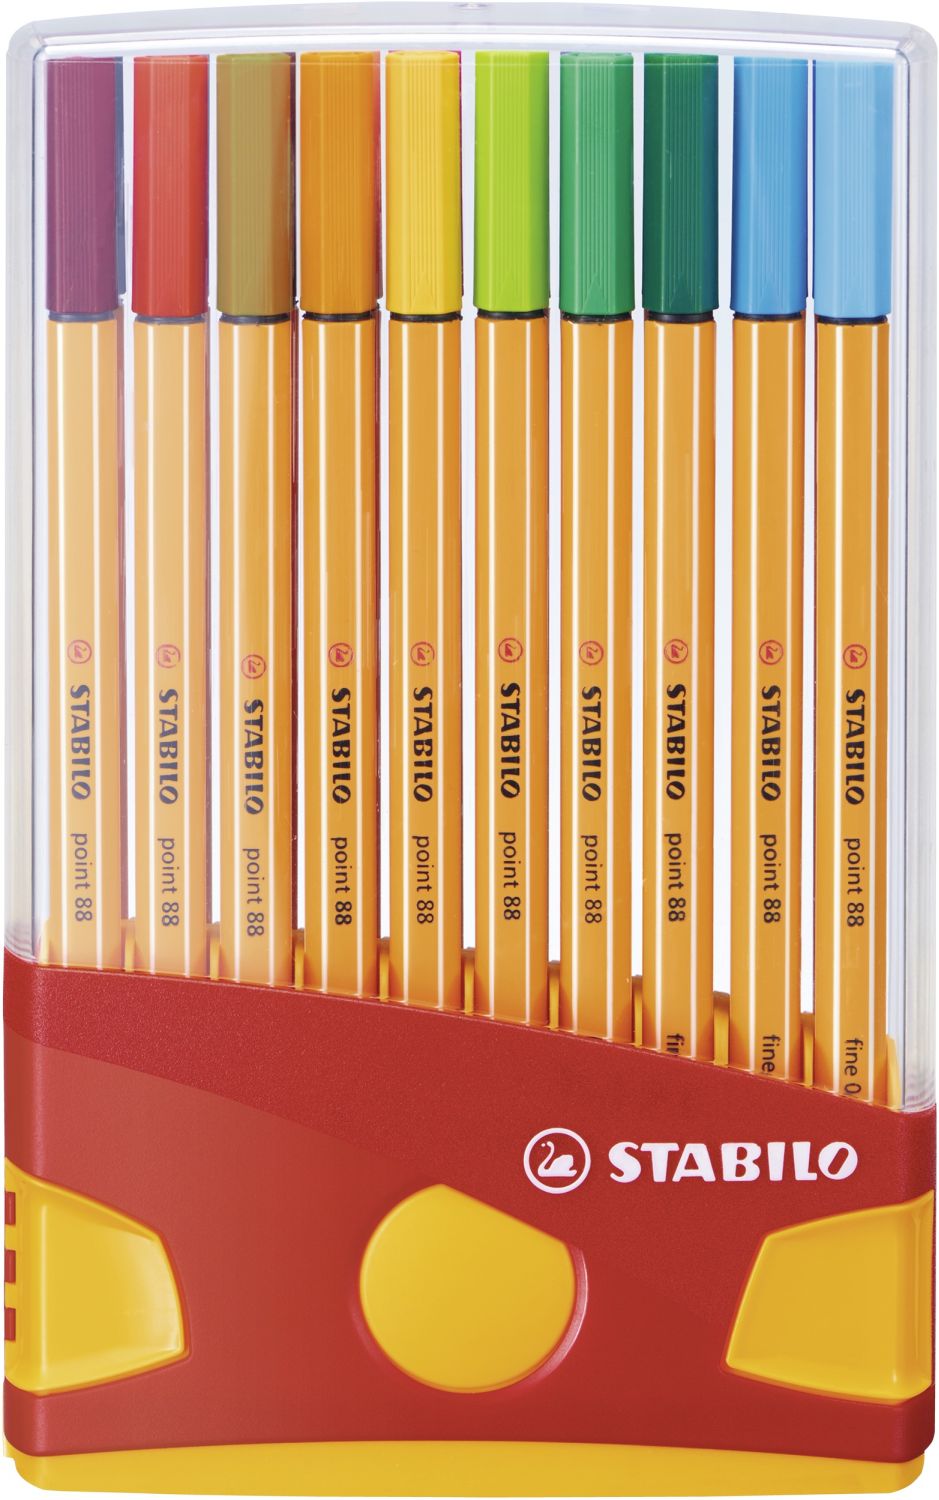 Fineliner - point 88 ColorParade - 20er Tischset in rot/orange- mit 20 verschiedenen Farben